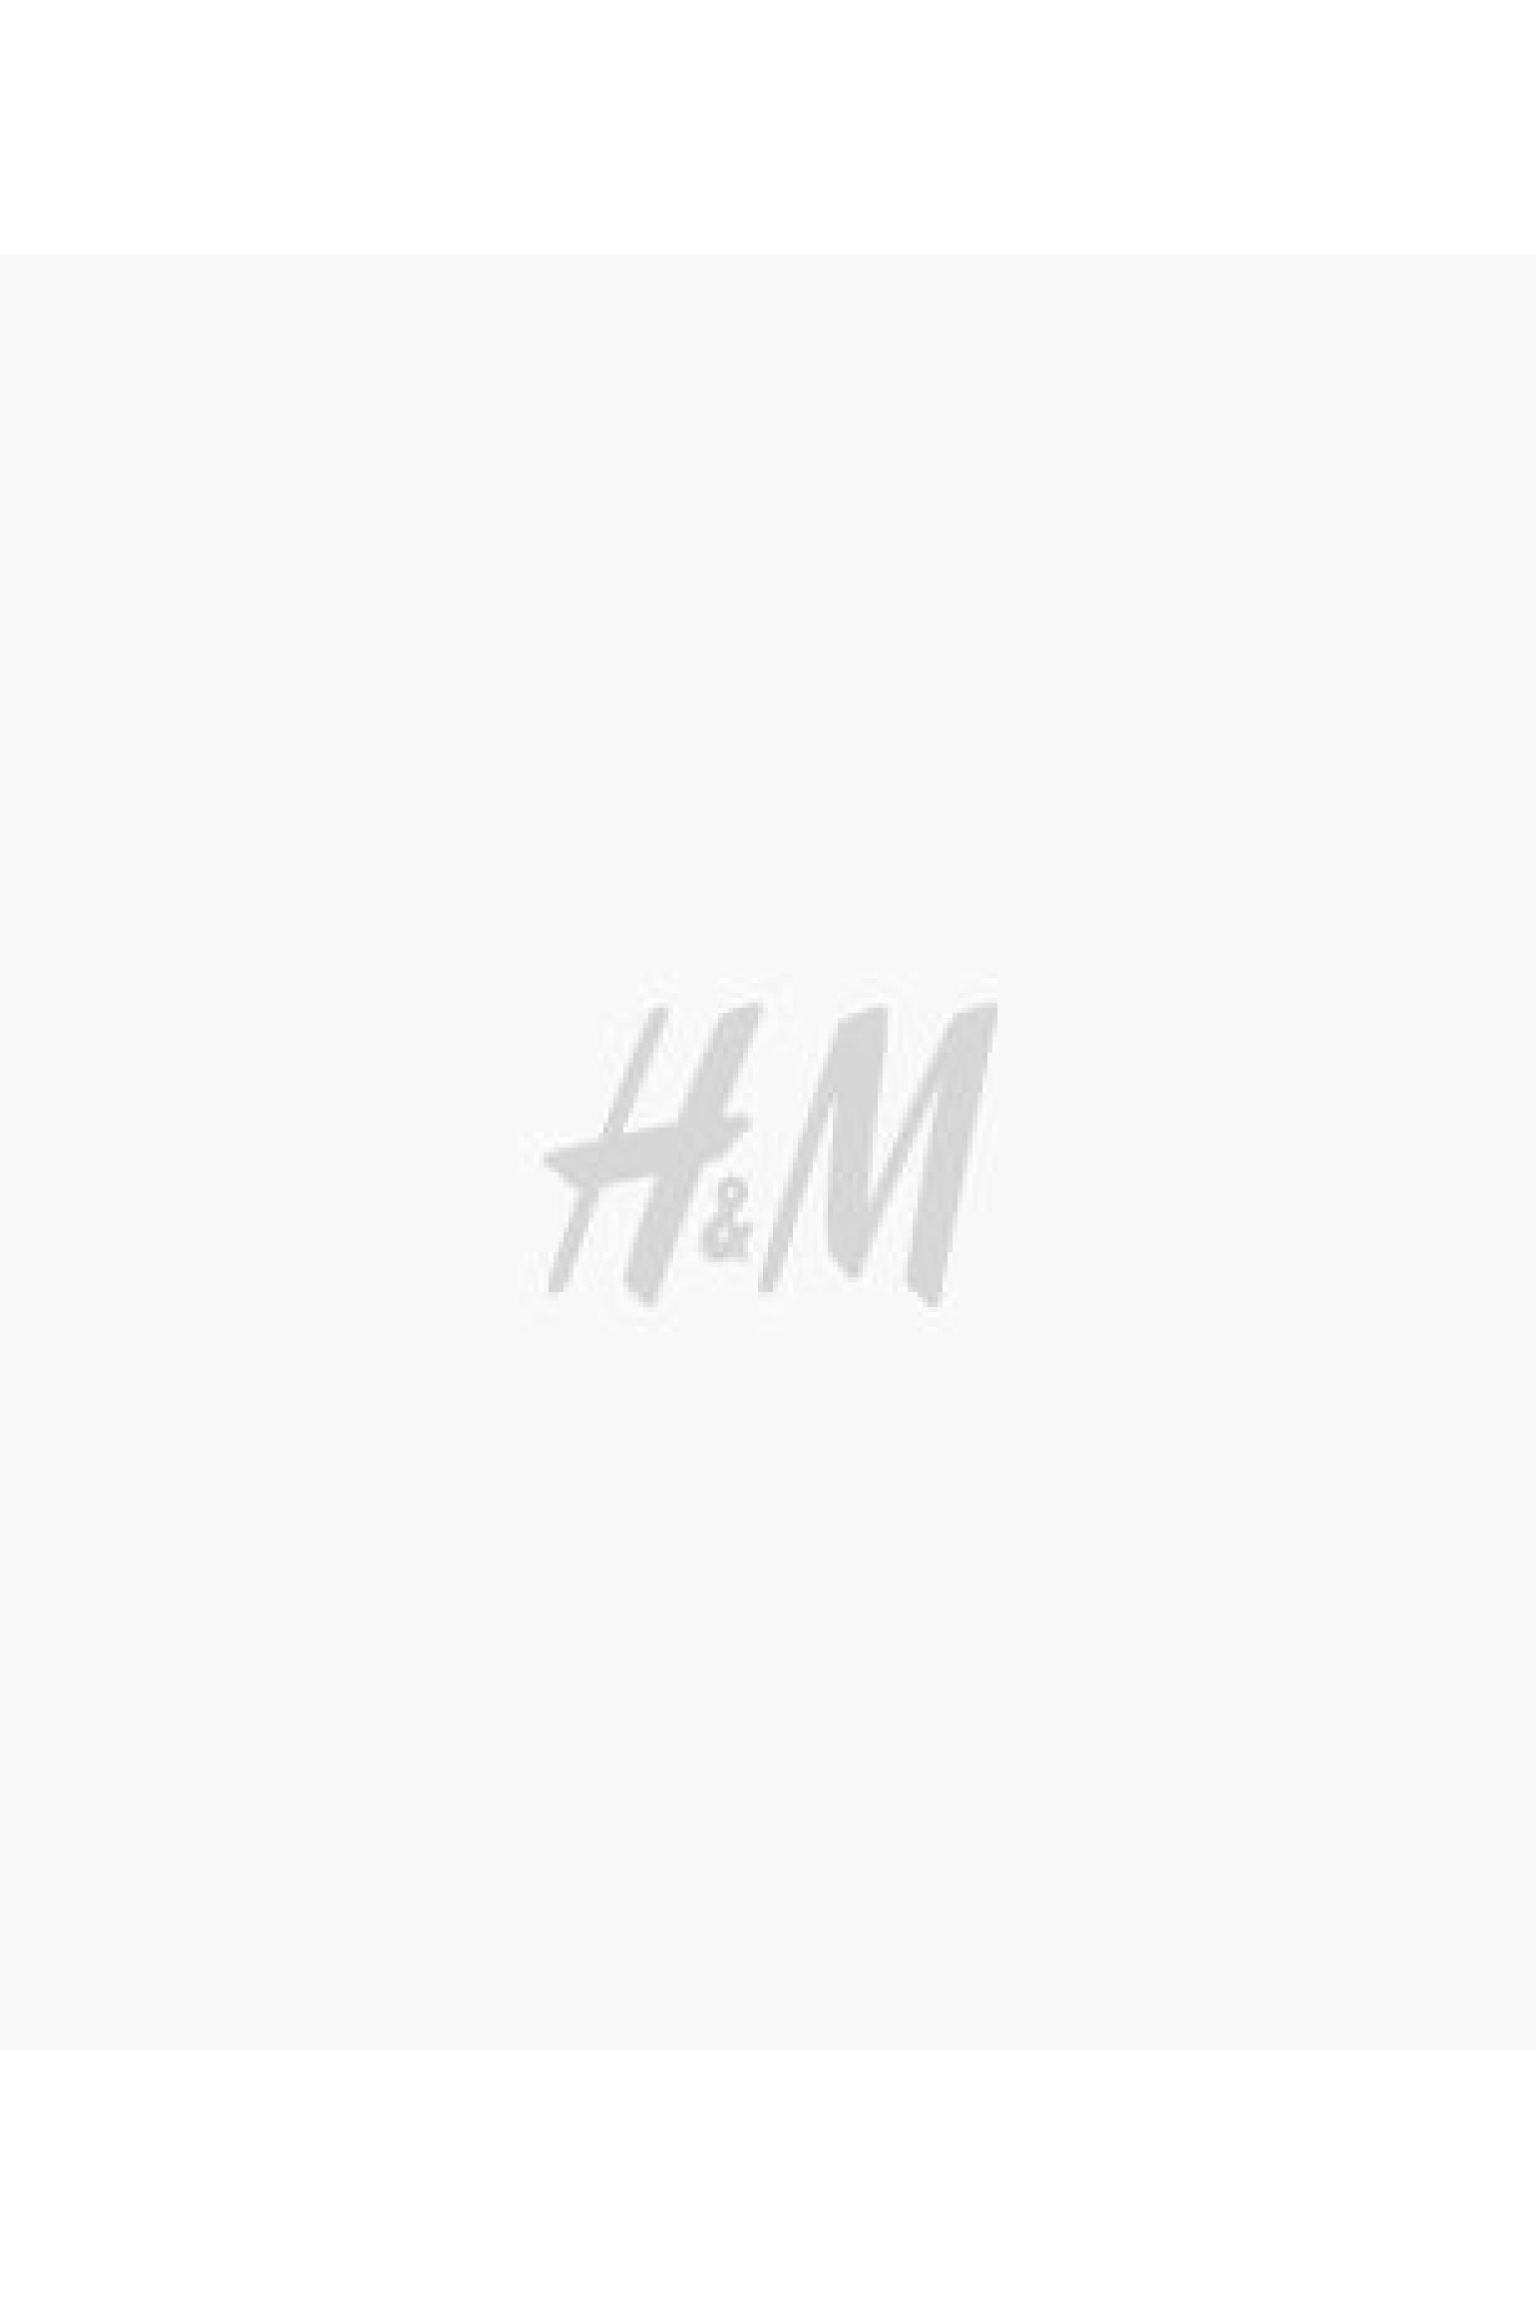 에이치앤엠 H&M Regular Fit Polo Shirt